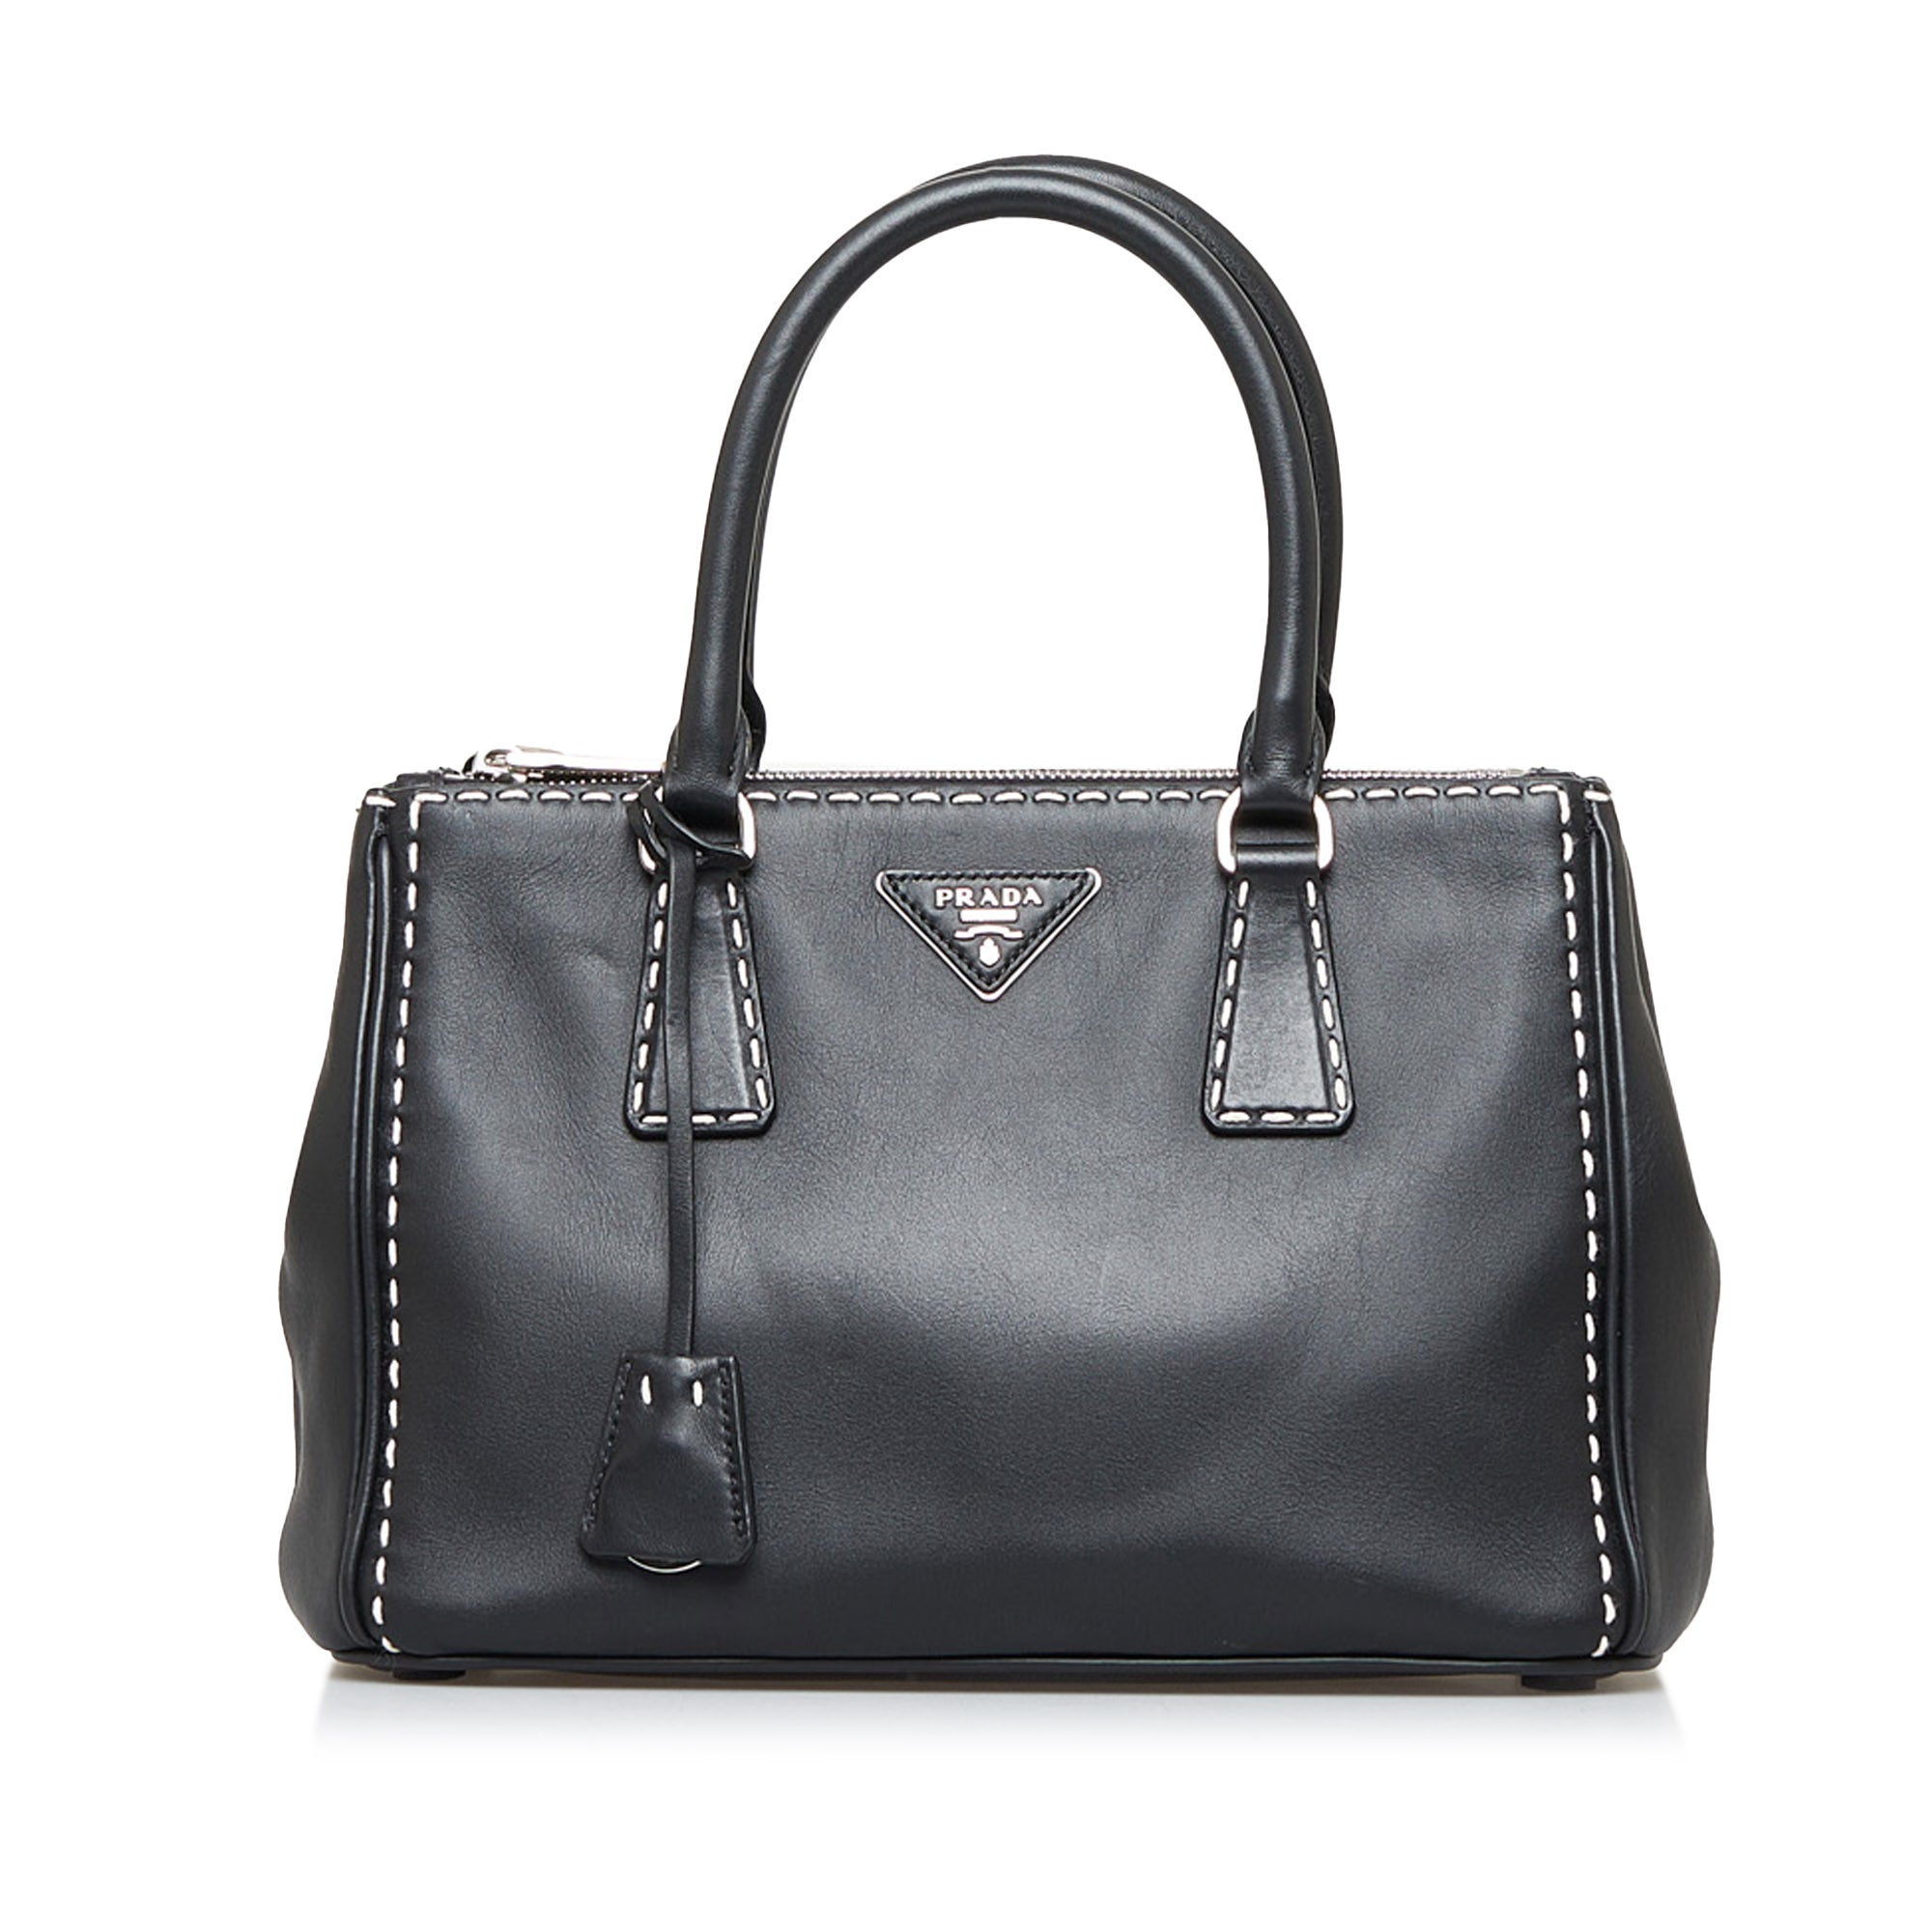 PRADA Saffiano Lux 2 Way Shoulder Bag Handbag Leather Black